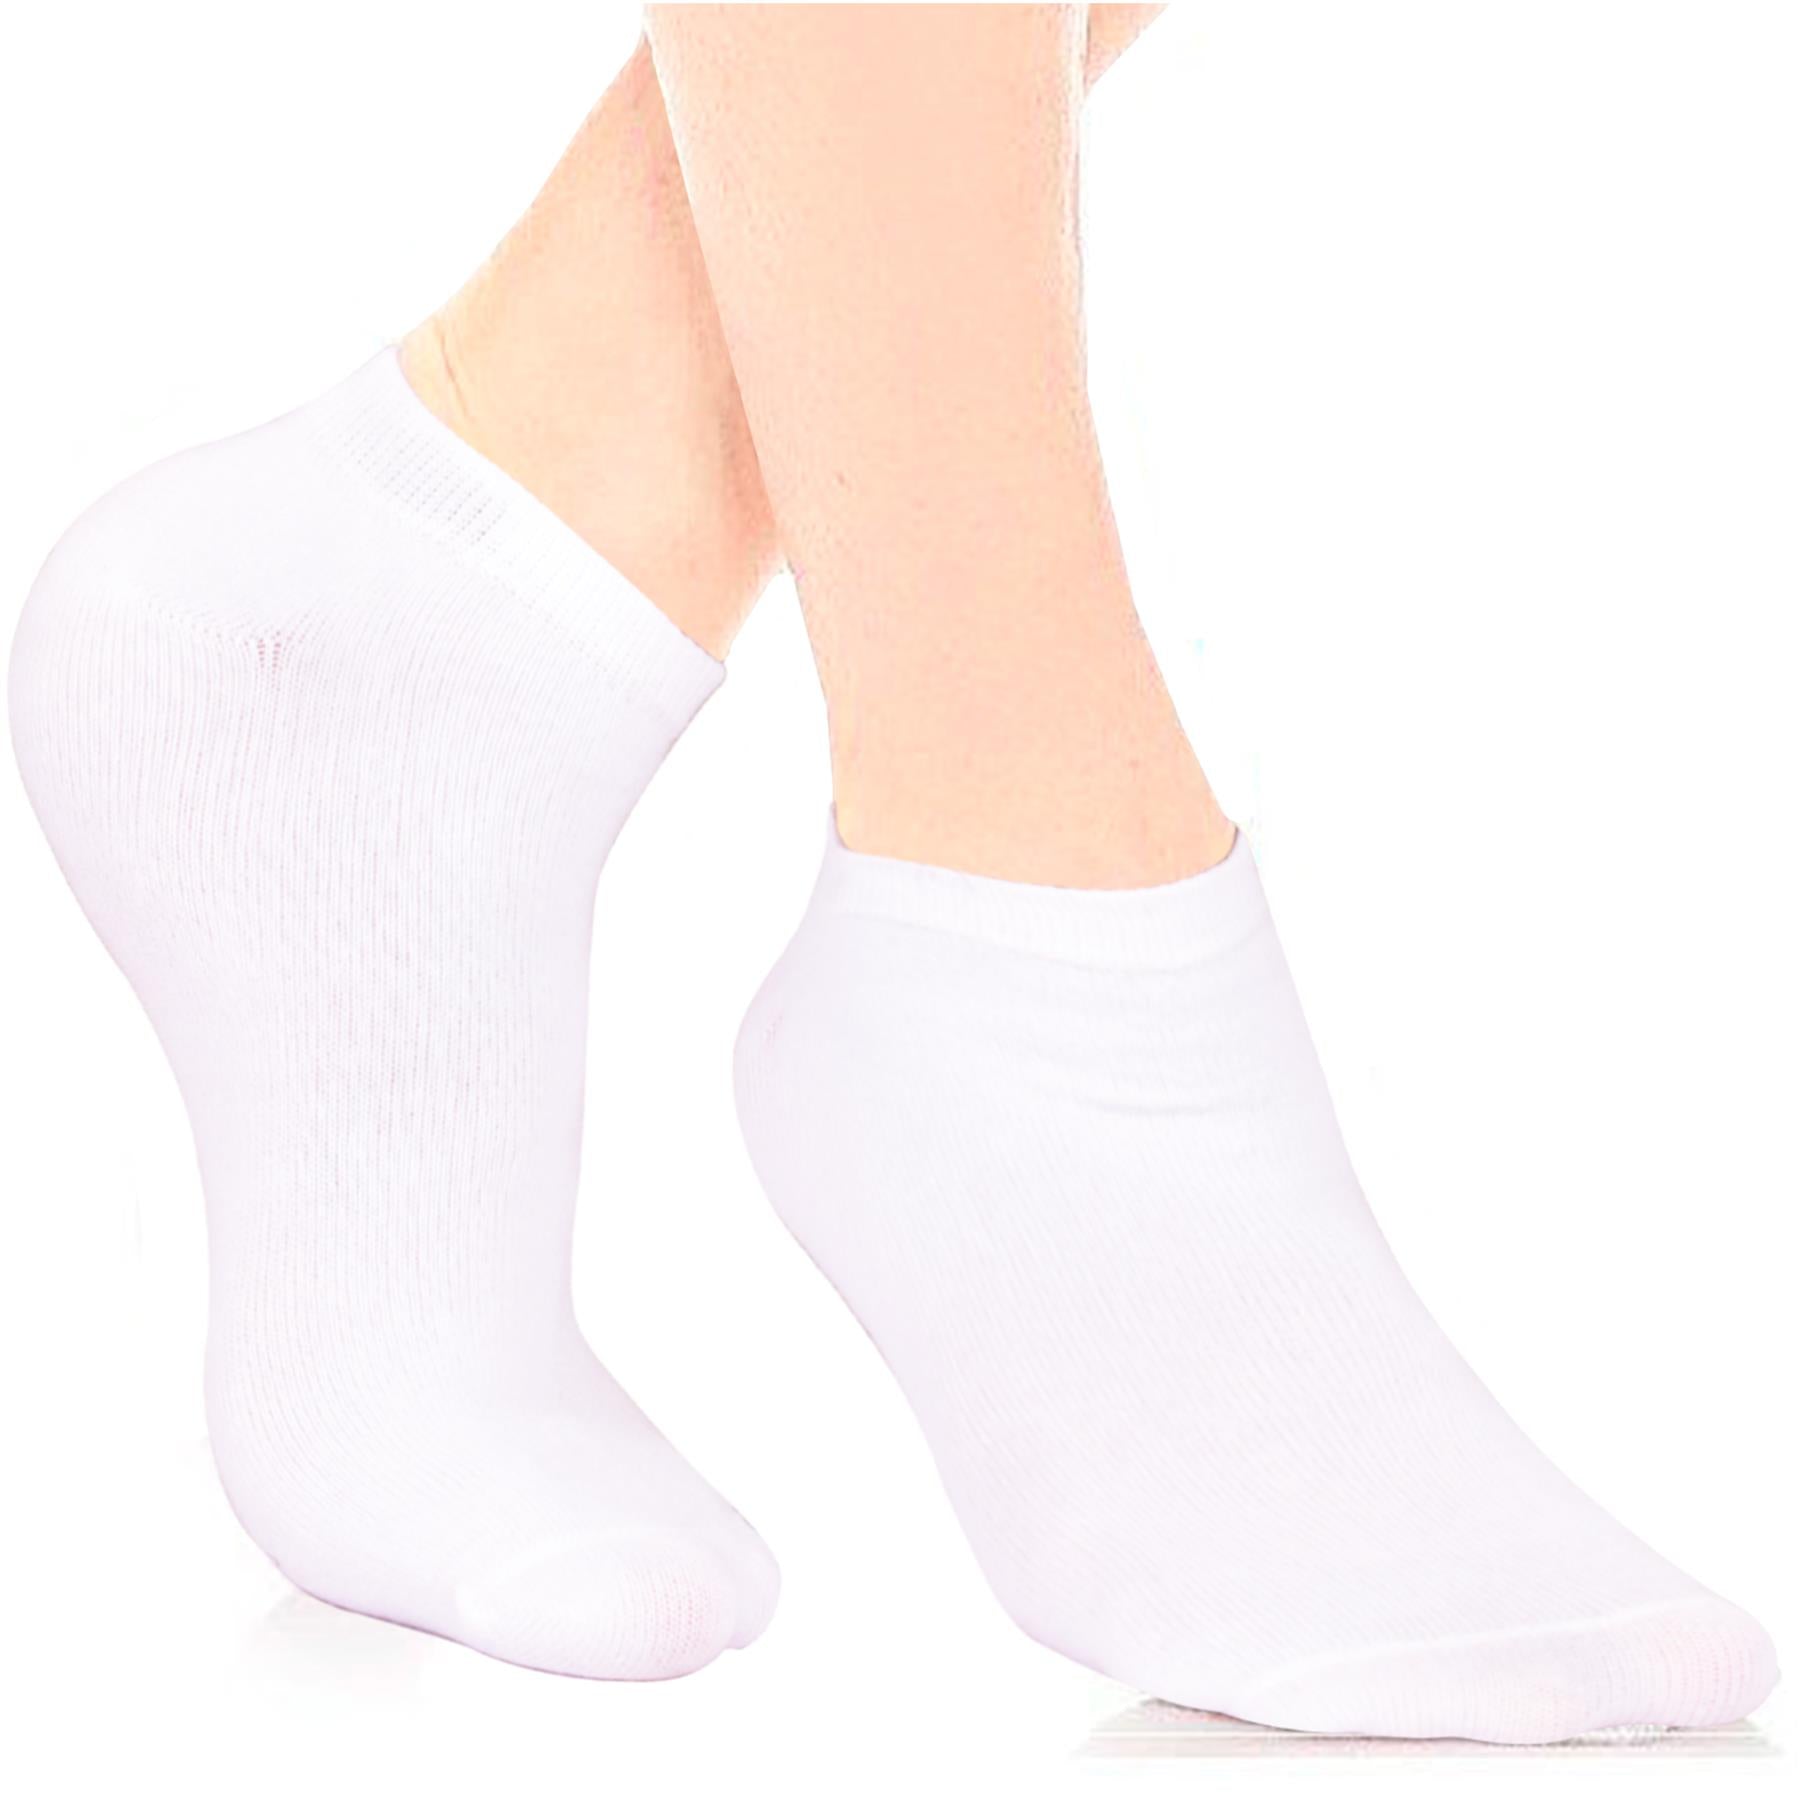 Kids Girls Boys 6 Pack Plain Ankle Socks Cotton Comfortable Summer Socks 3-14